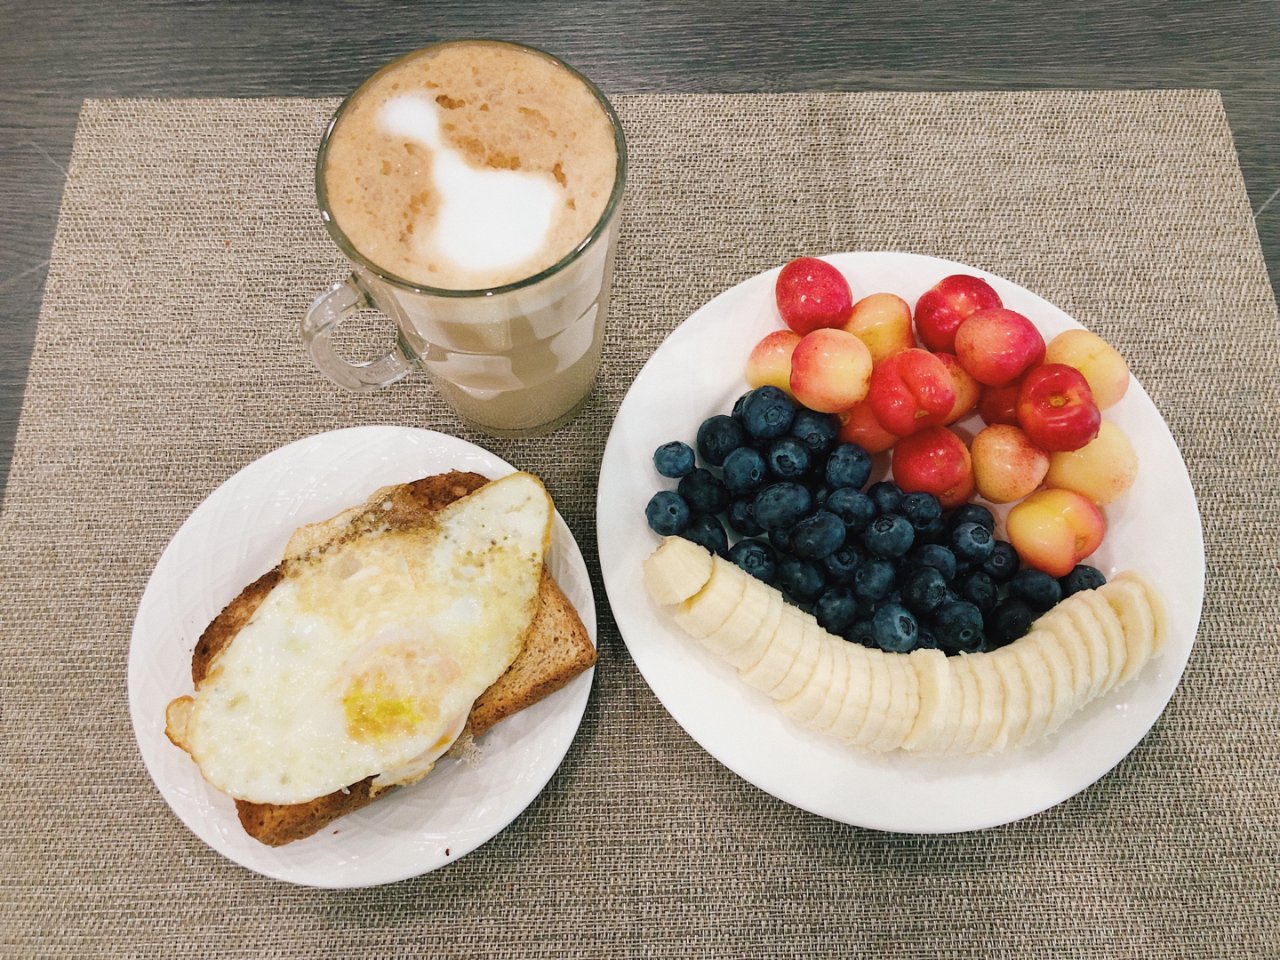 减肥餐,无糖咖啡,水果拼盘,全麦面包+鸡蛋,早餐吃什么